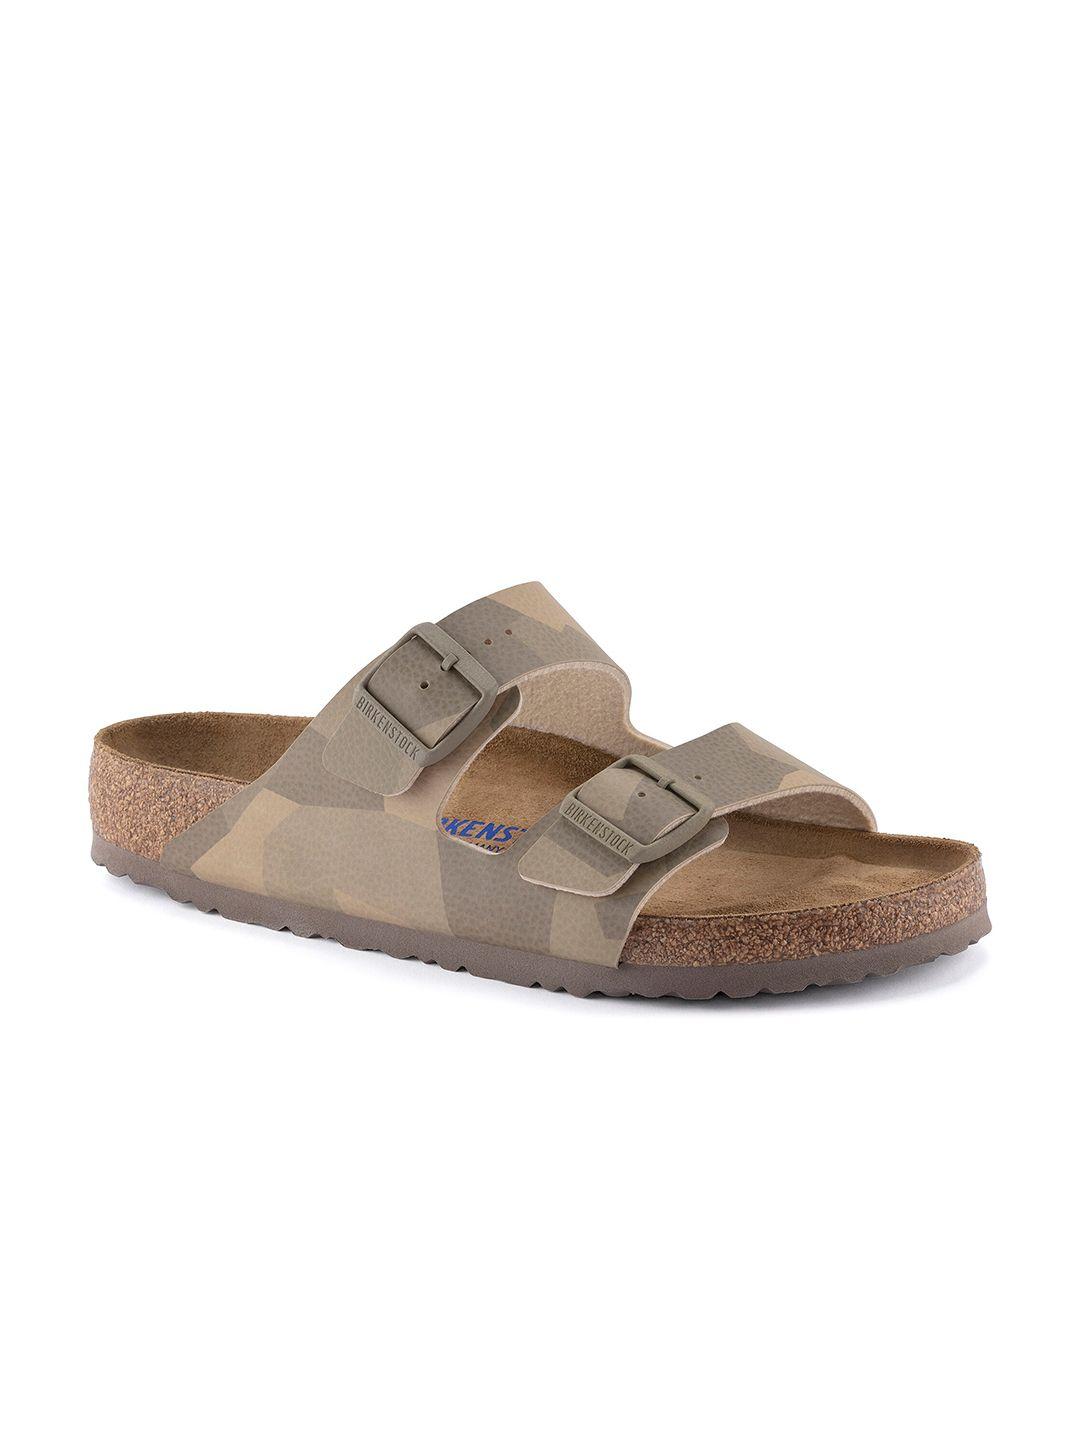 birkenstock arizona desert printed two-strap comfort sandals